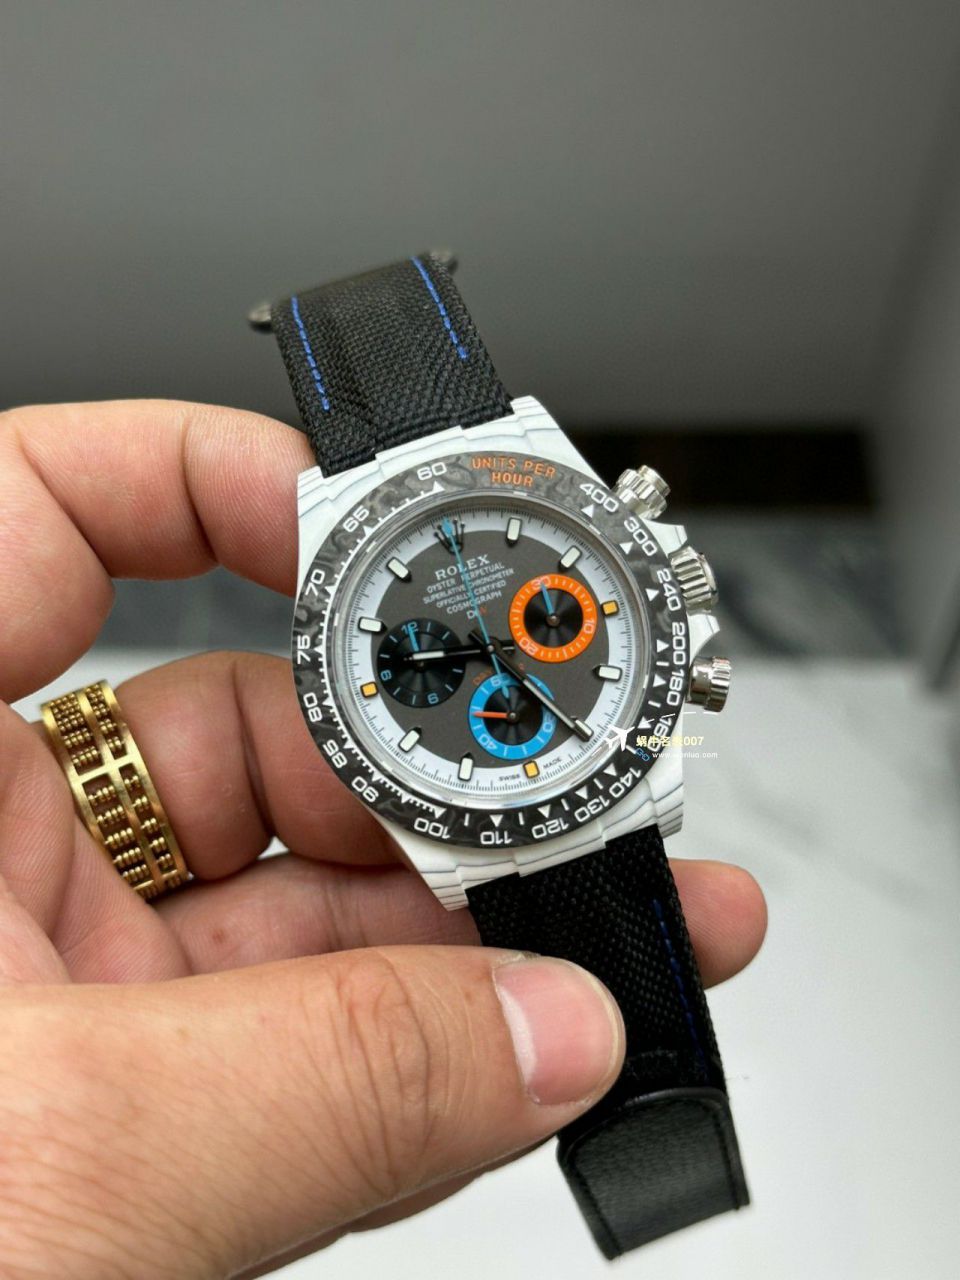 【视频评测】一比一顶级复刻手表Diw顶配碳纤维迪通拿 / R808